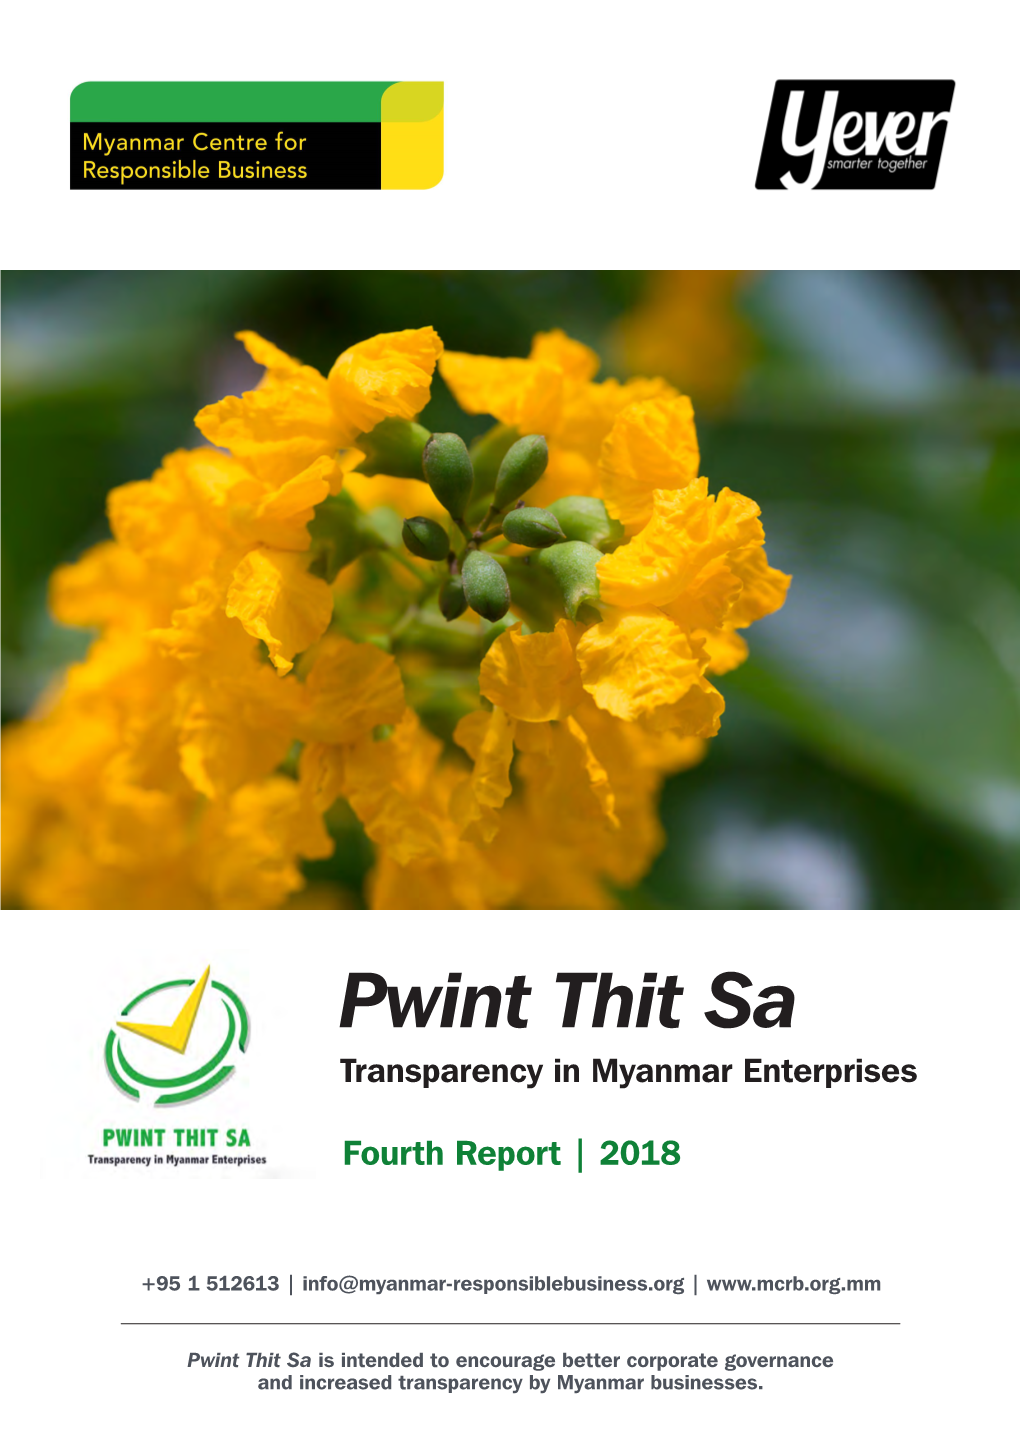 Pwint Thit Sa Transparency in Myanmar Enterprises